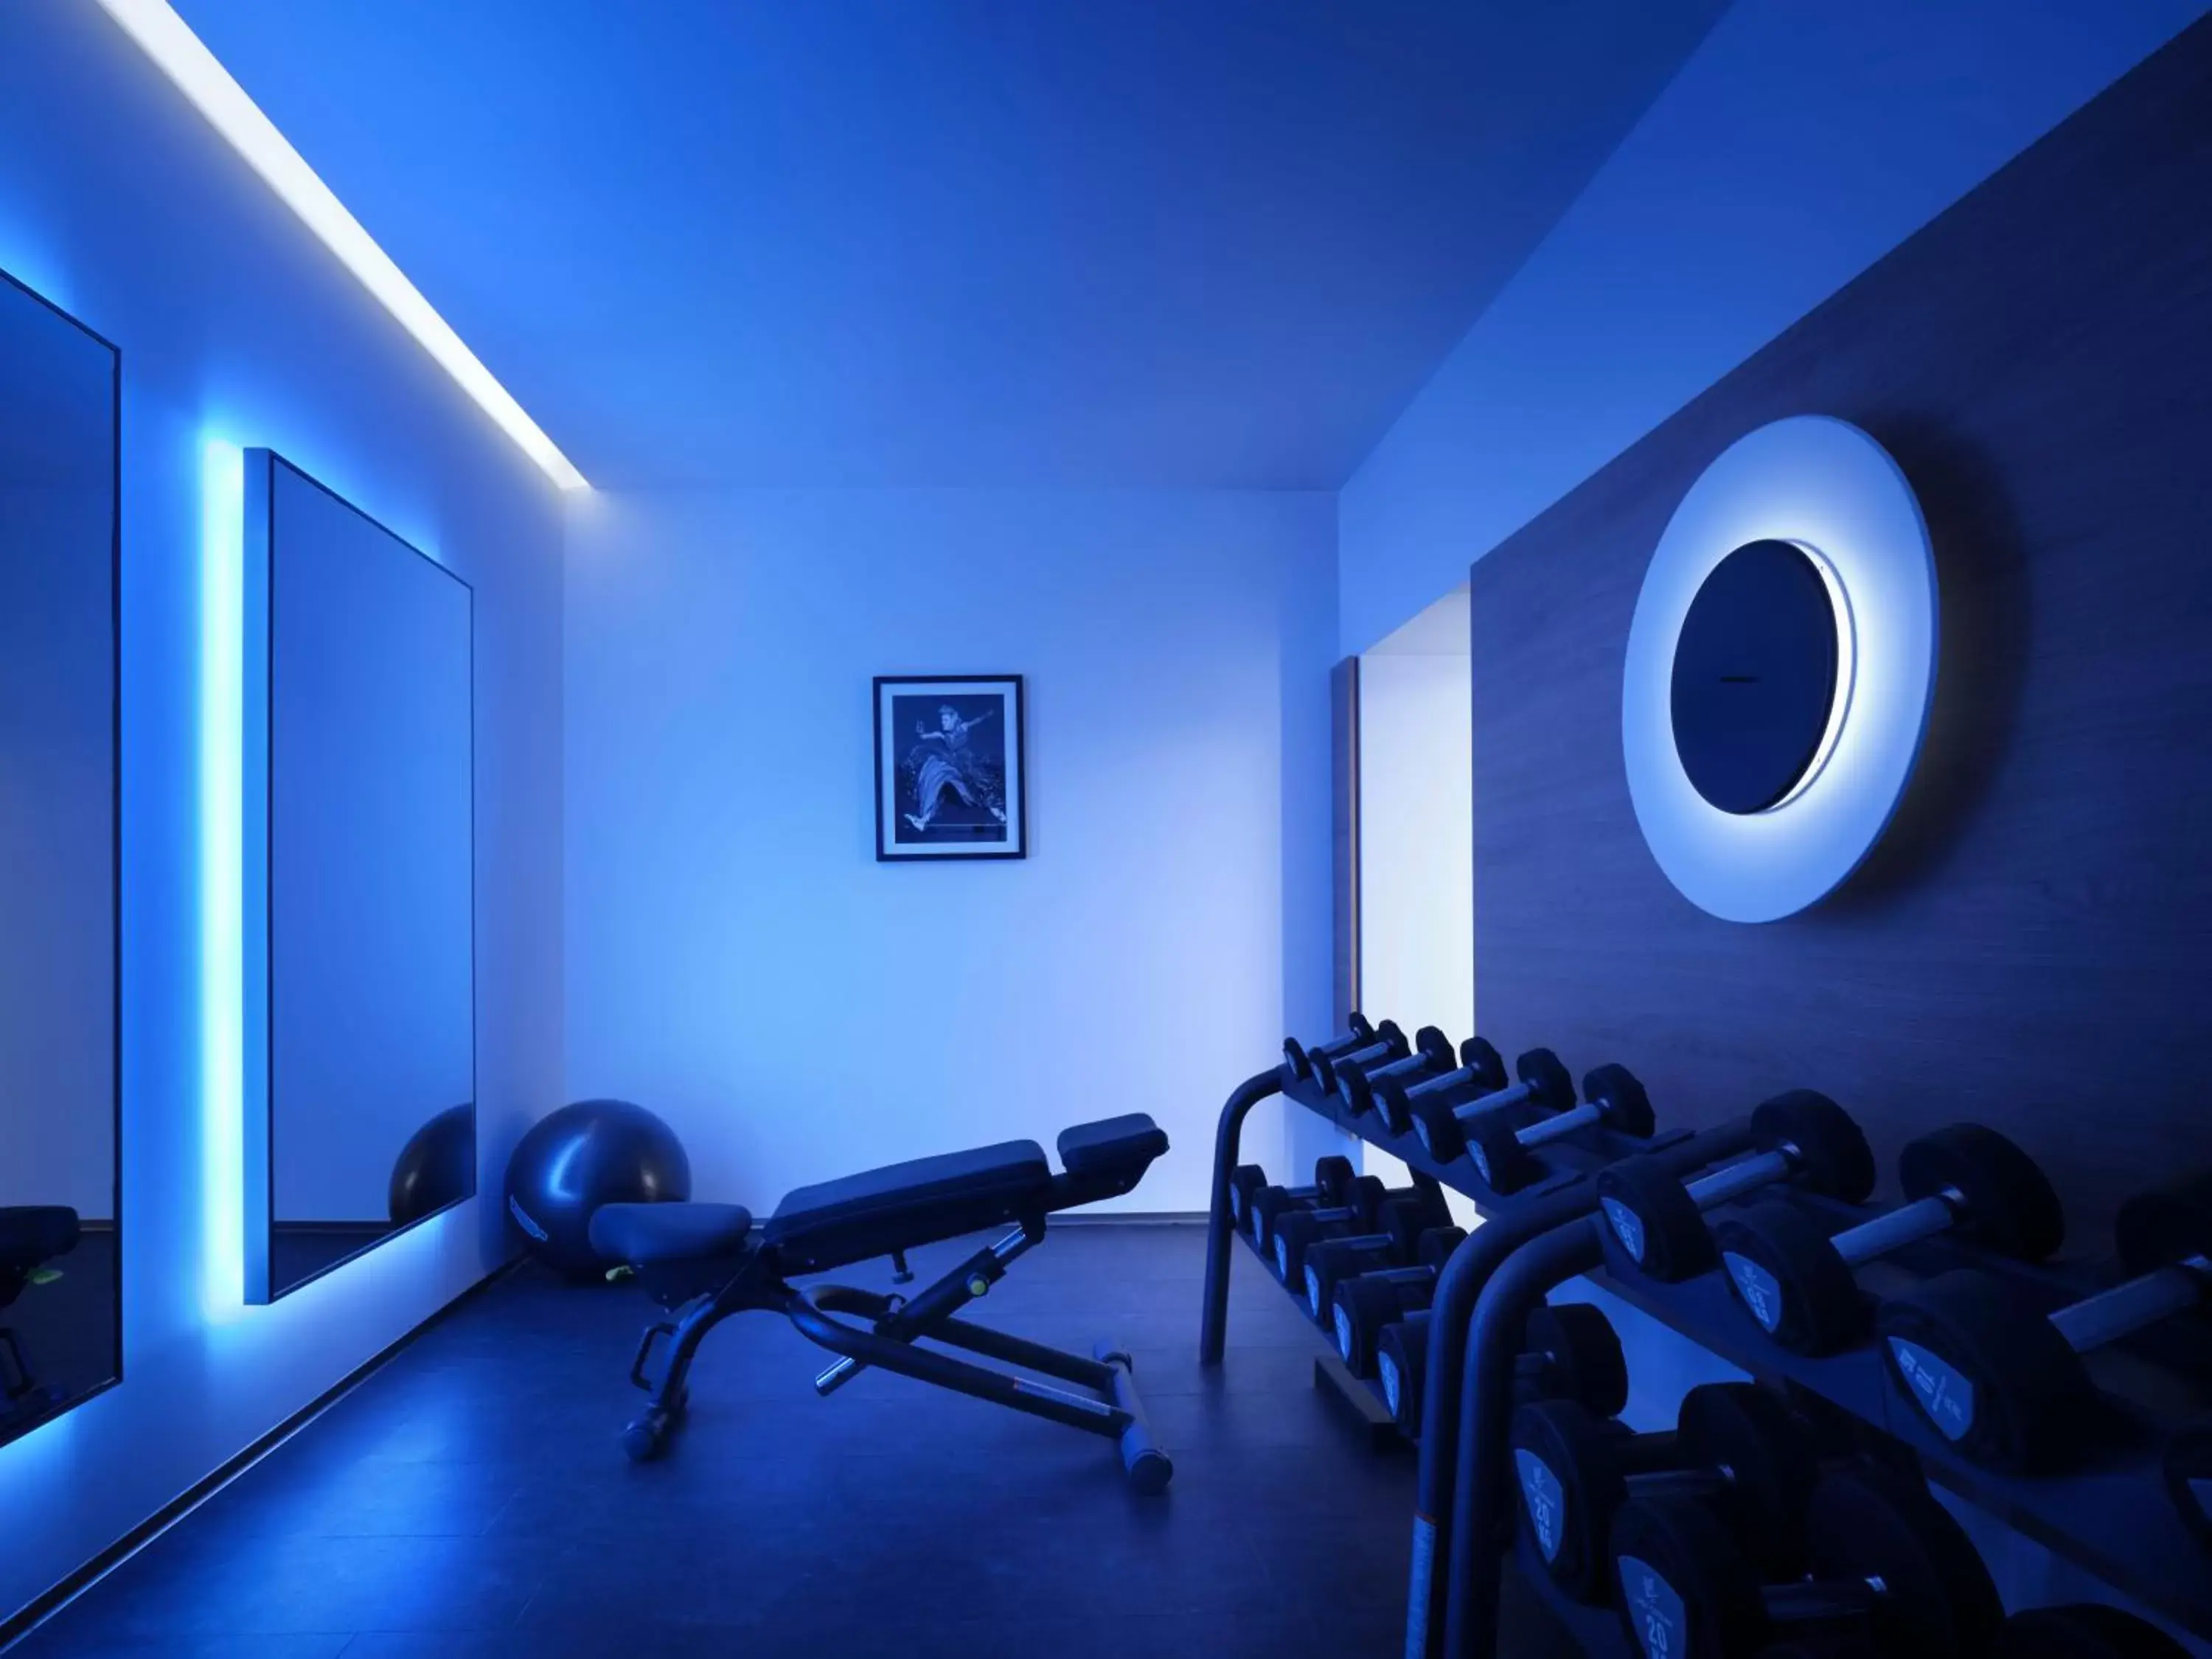 Fitness centre/facilities, Fitness Center/Facilities in Casa Cipriani Milano